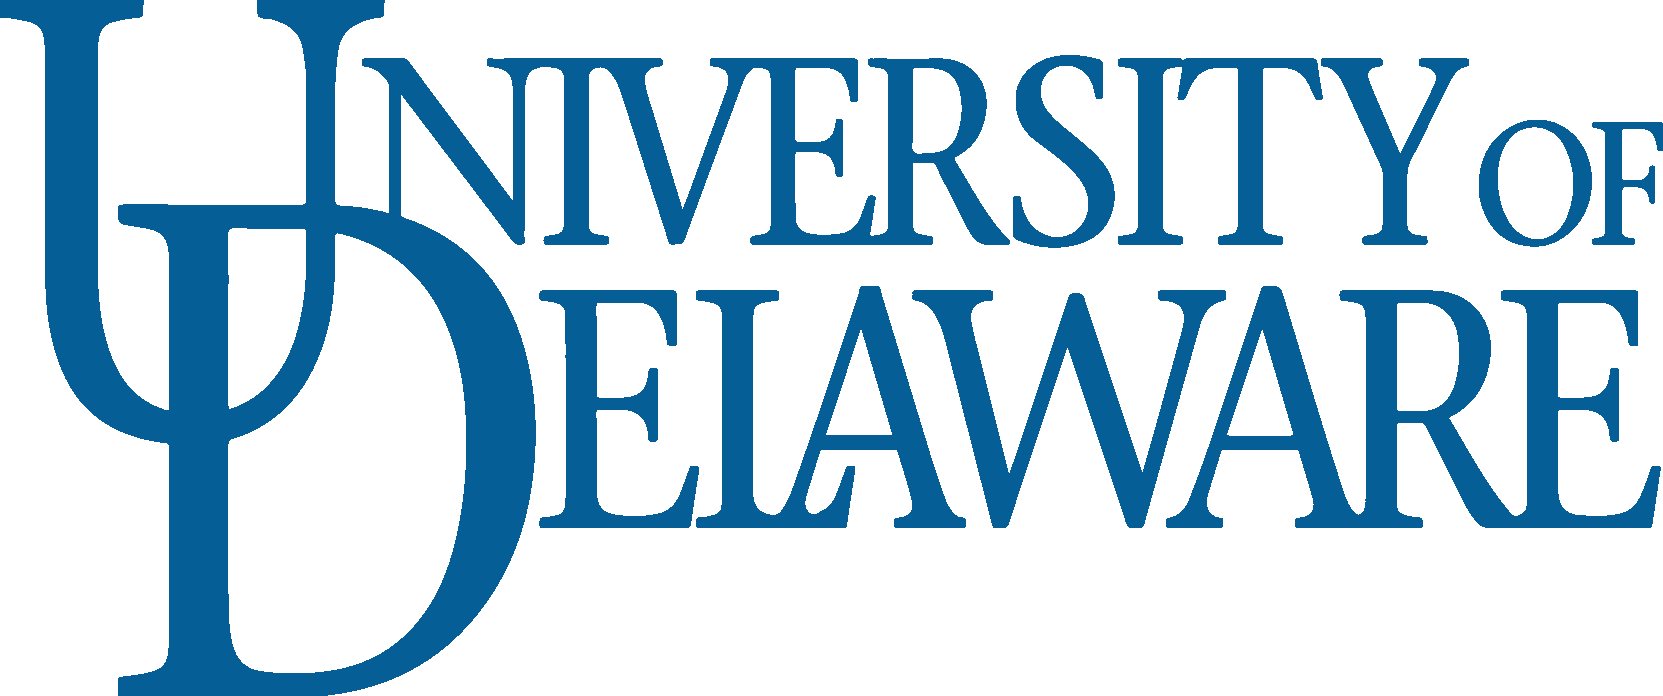 UD   University of Delaware Logo png